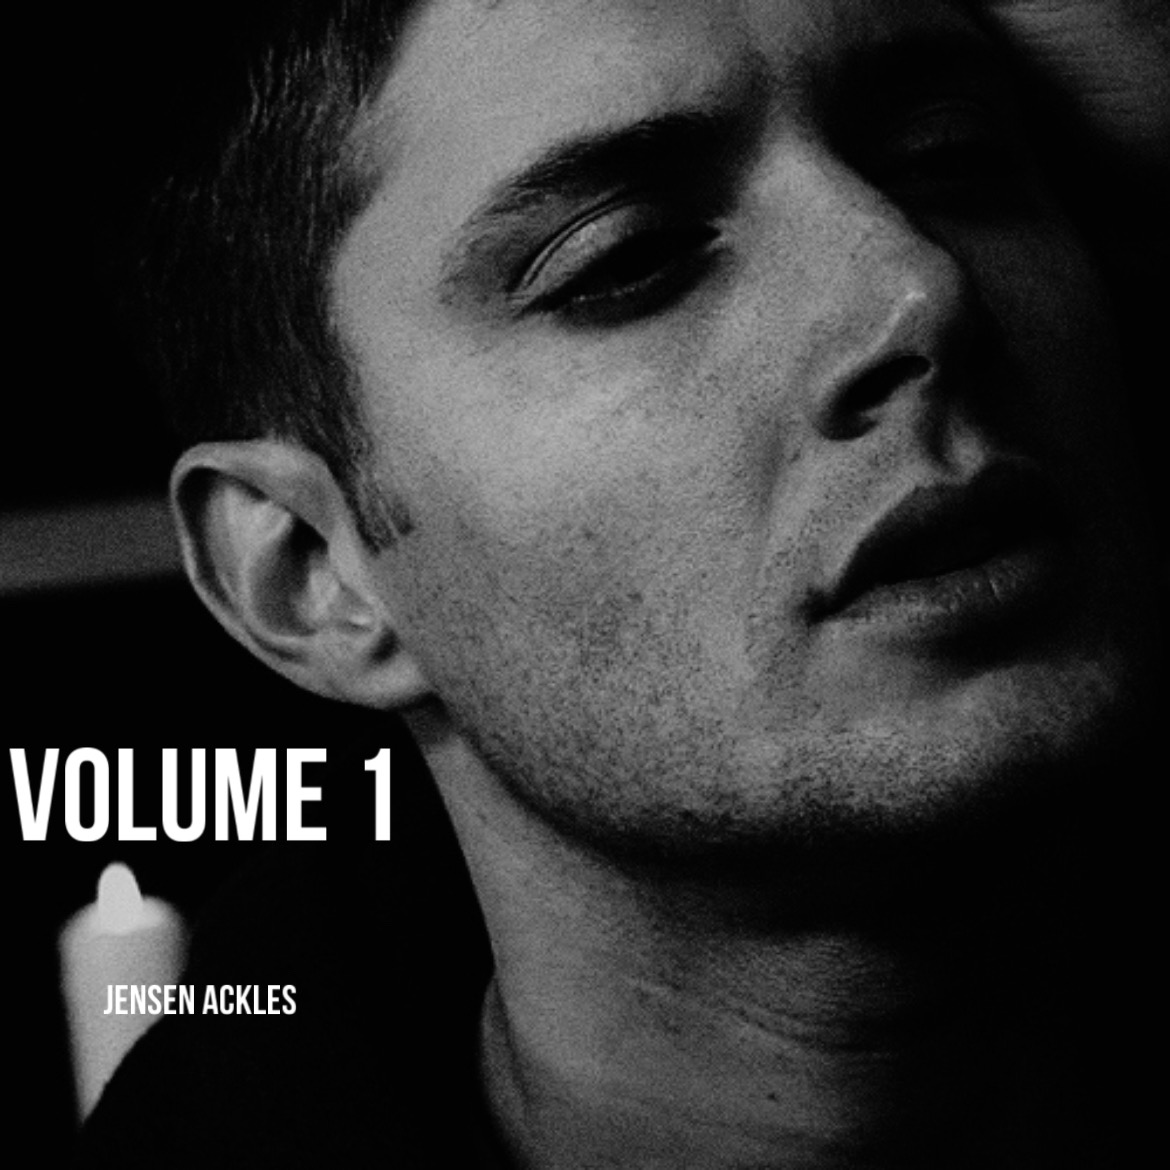 Jensen Ackles Volume 1 cover artwork